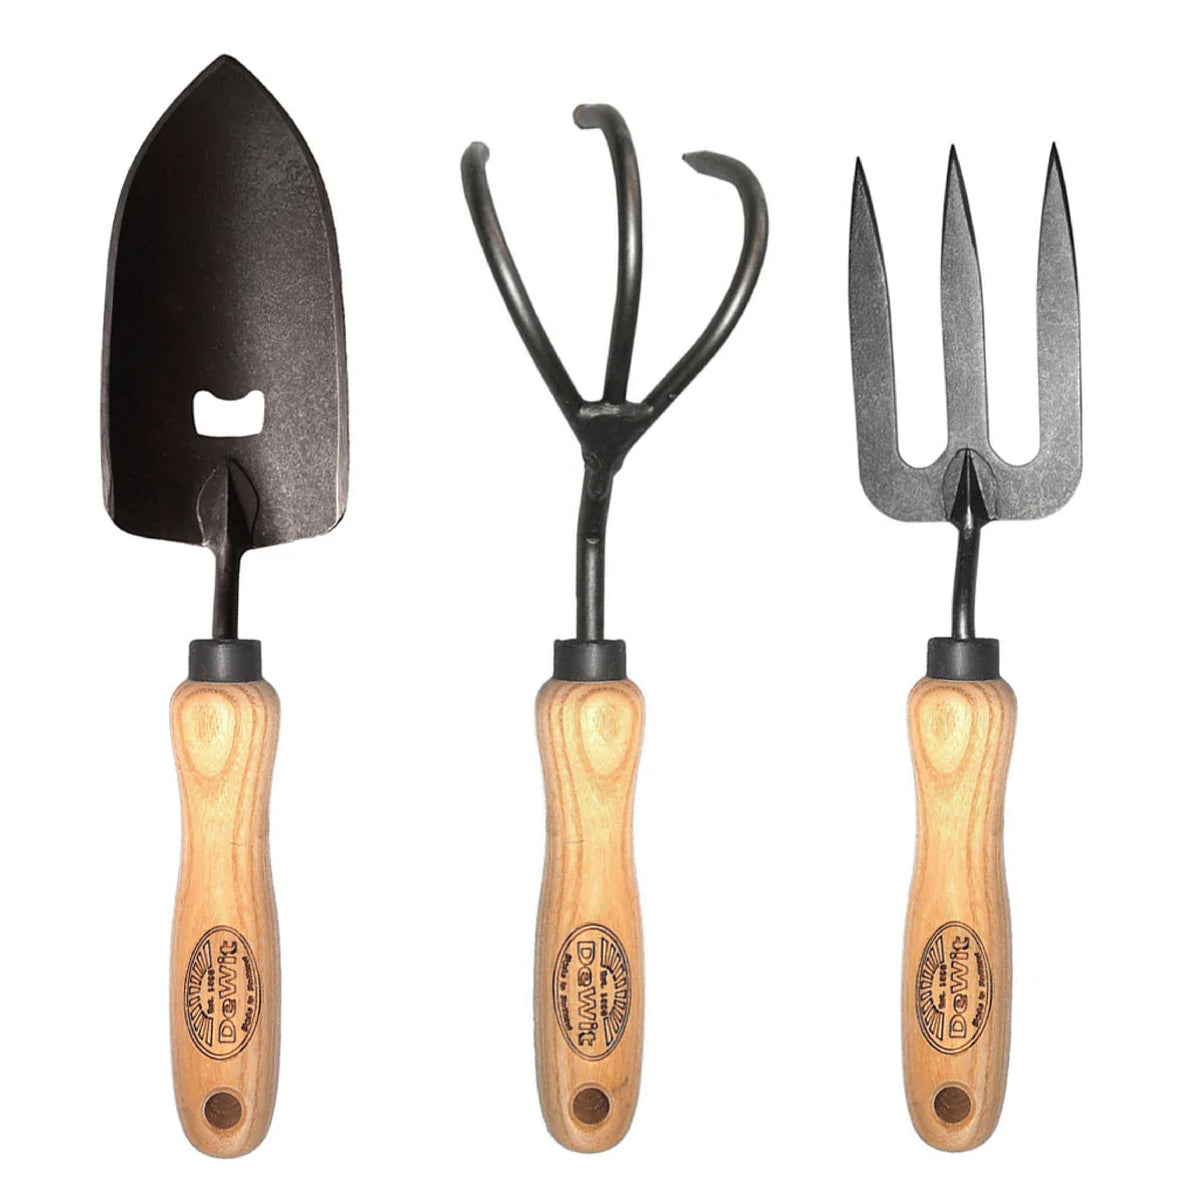 DeWit Tool Gift Set - 3 Piece Essentials for Dad